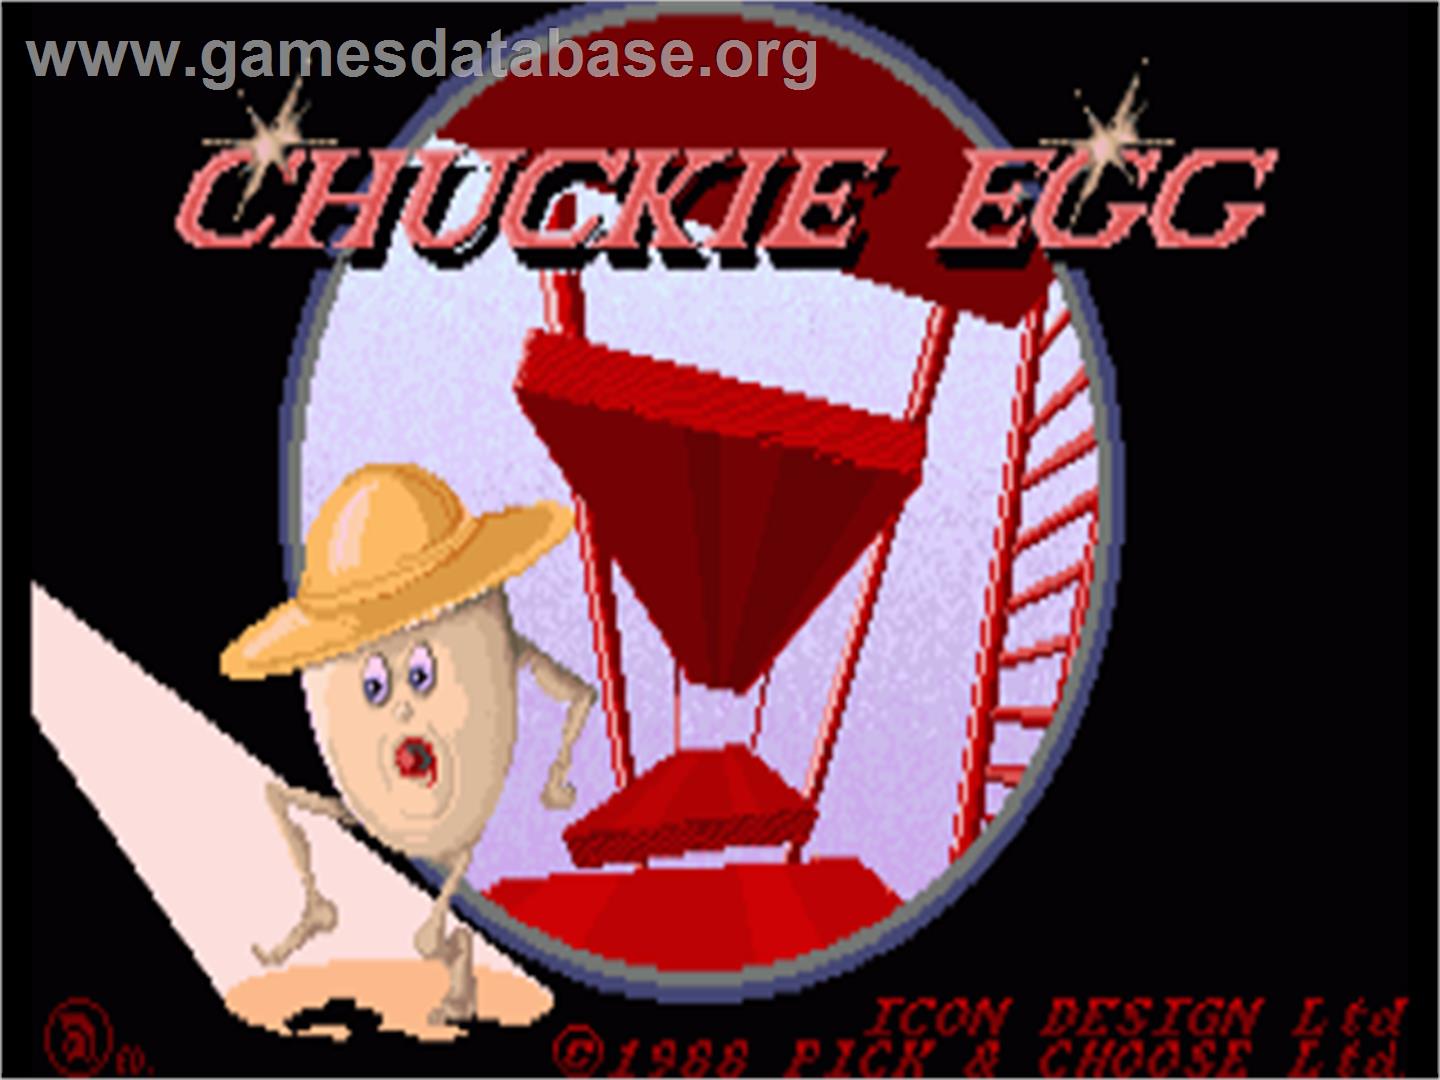 Chuckie Egg - Commodore Amiga - Artwork - Title Screen